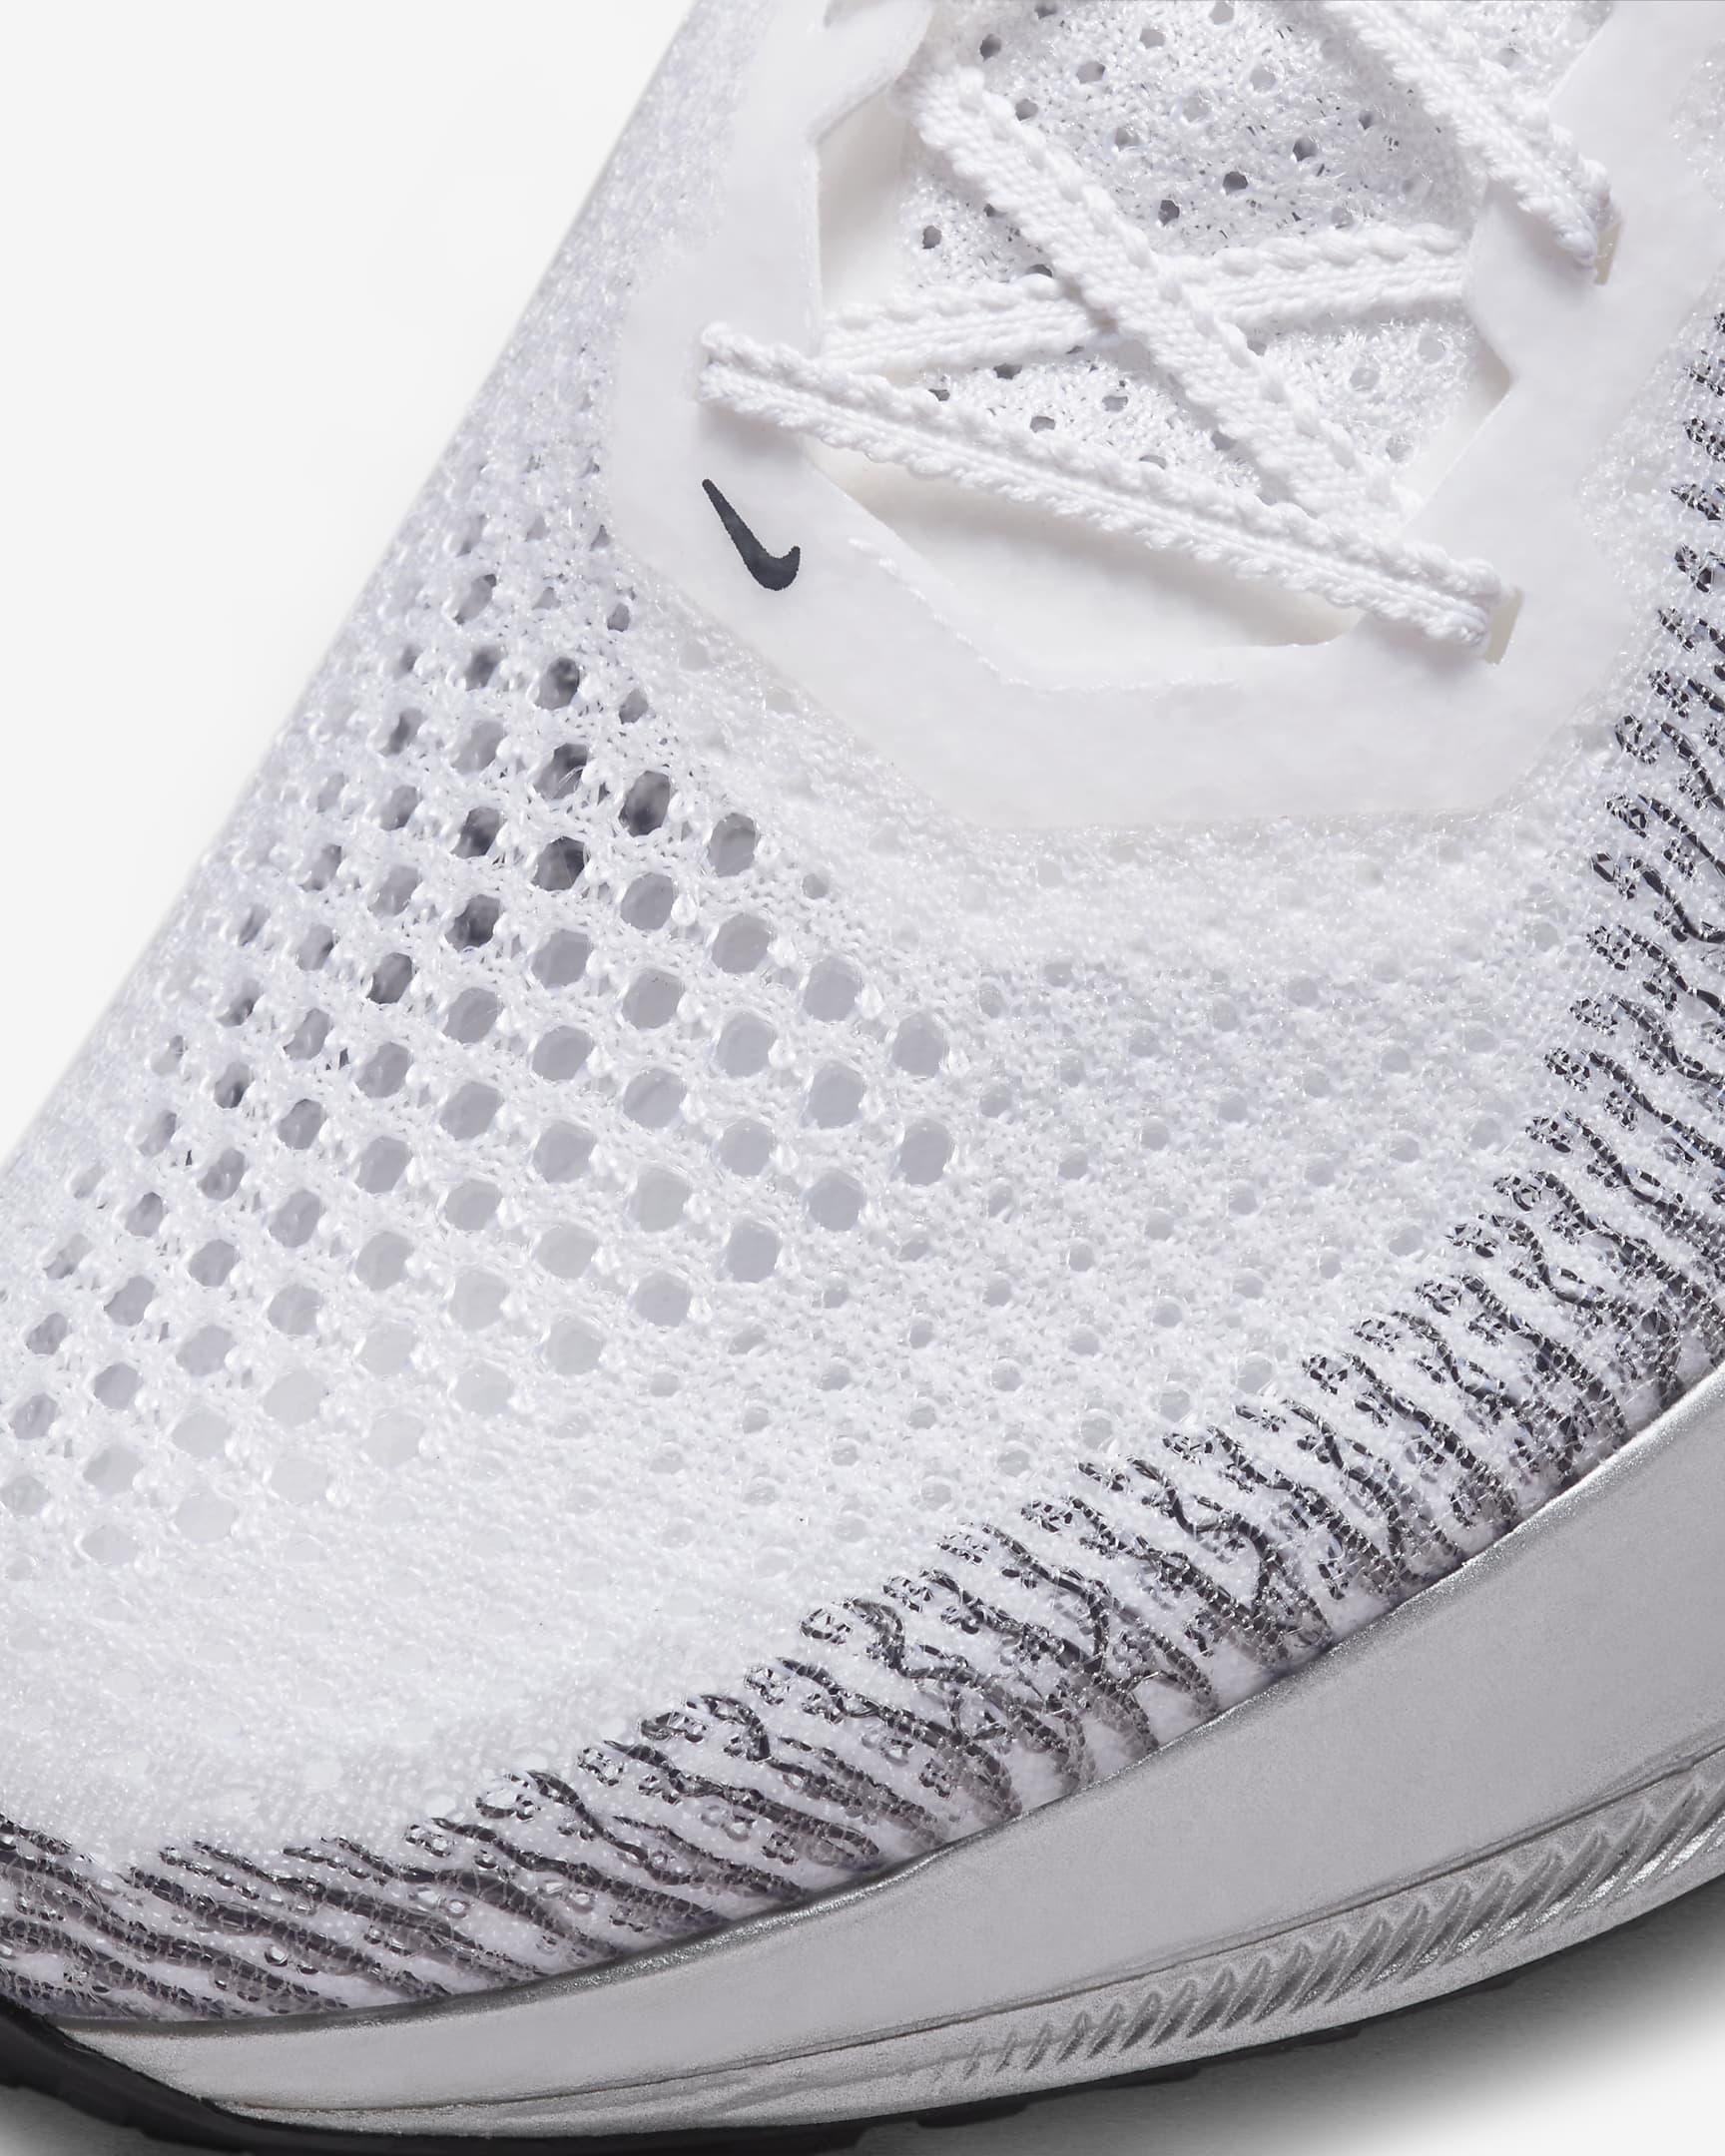 Nike Vaporfly 3 Men's Road Racing Shoes - White/Particle Grey/Metallic Silver/Dark Smoke Grey